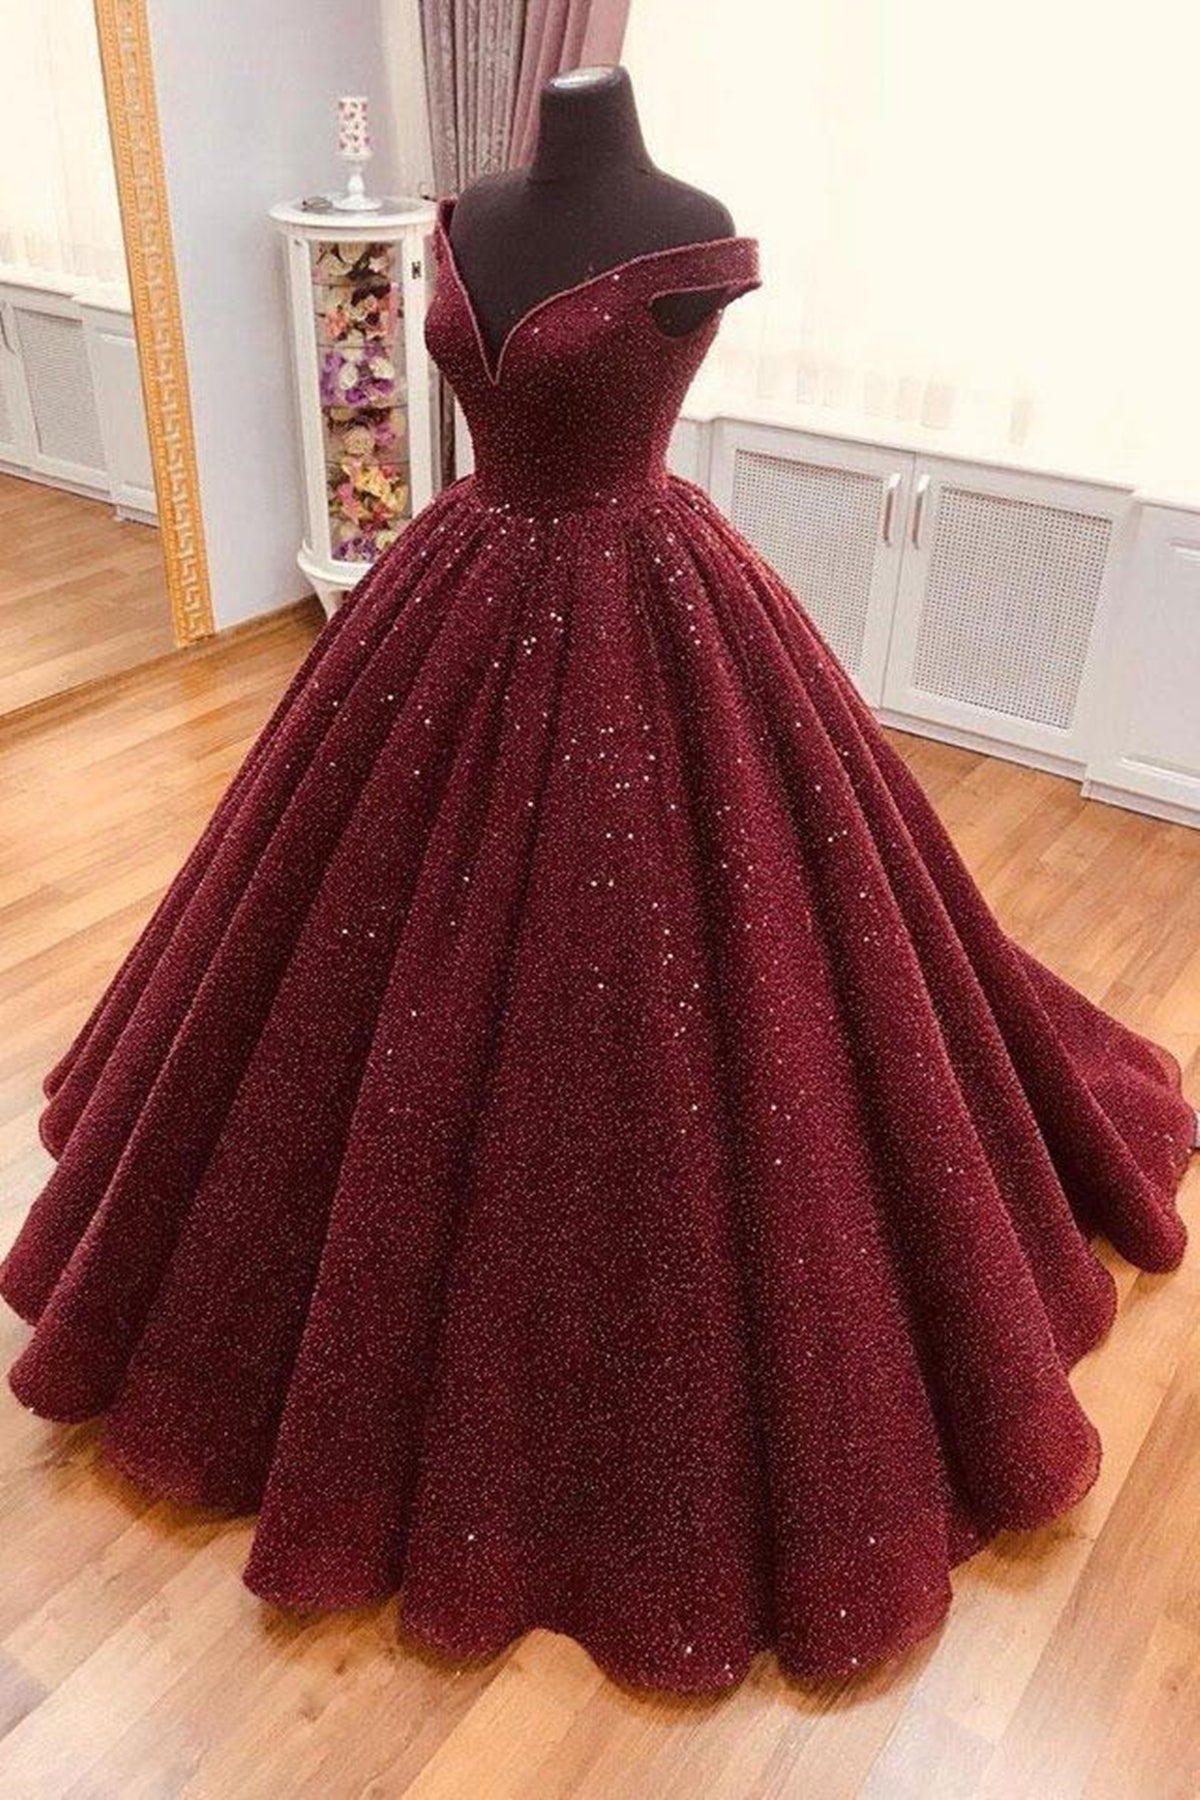 Shiny Off the Shoulder Burgundy Prom Dresses, Dark Wine Red Off Shoulder Long Formal Evening Dresses